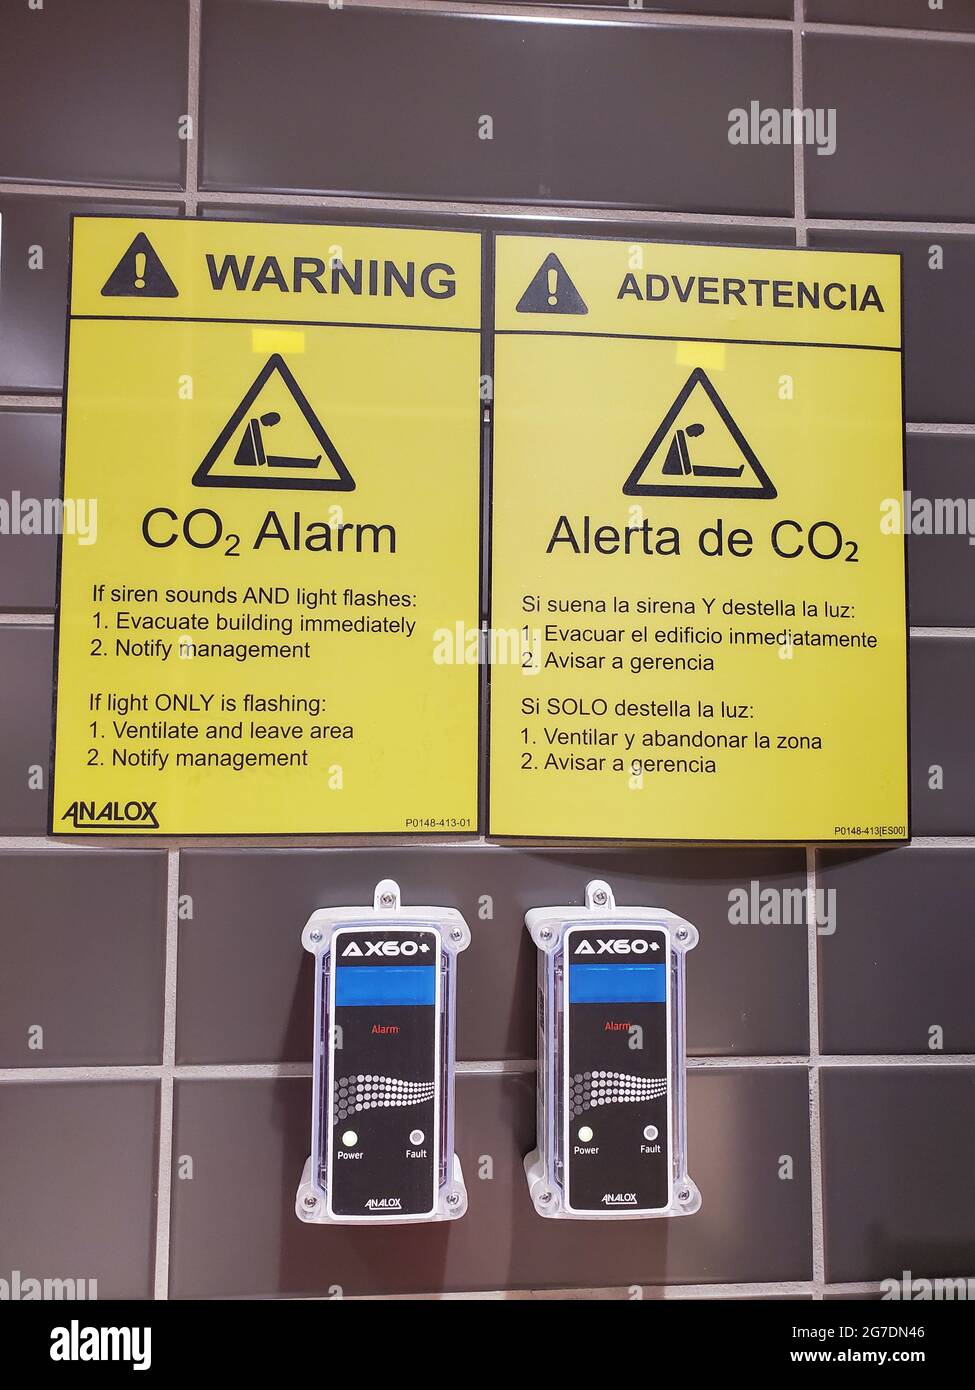 Gros plan de deux alarmes murales de dioxyde de carbone Analox avec avis de sécurité en espagnol et en anglais, photographiés à Walnut Creek, Californie, le 2 avril 2021. () Banque D'Images